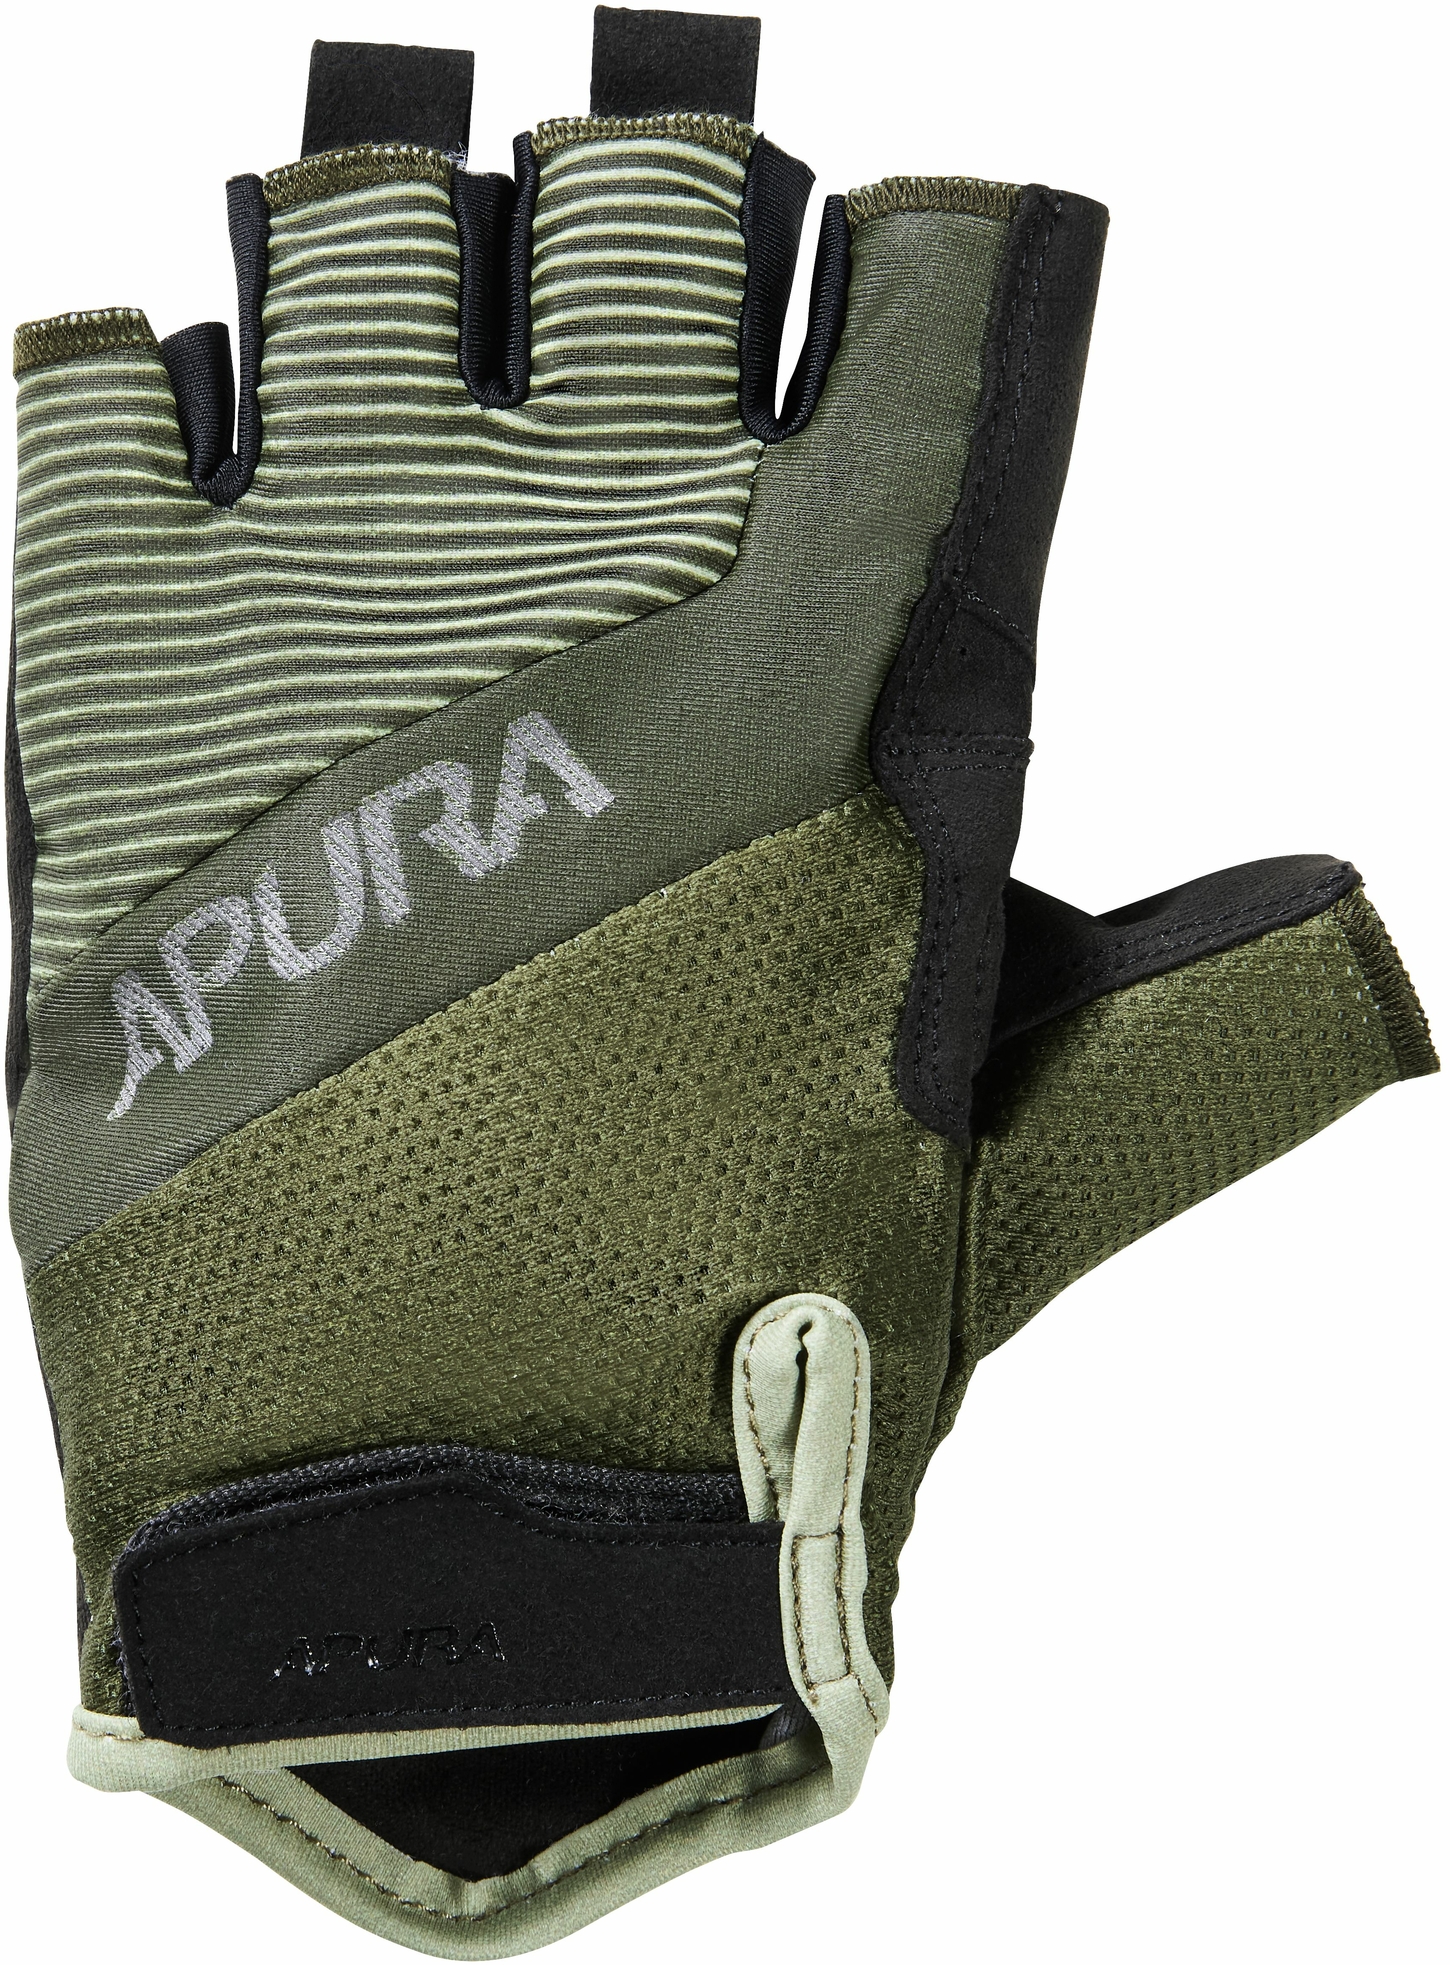 Bekleidung/Handschuhe: Apura  Handschuh Kurzfinger Explore XS 